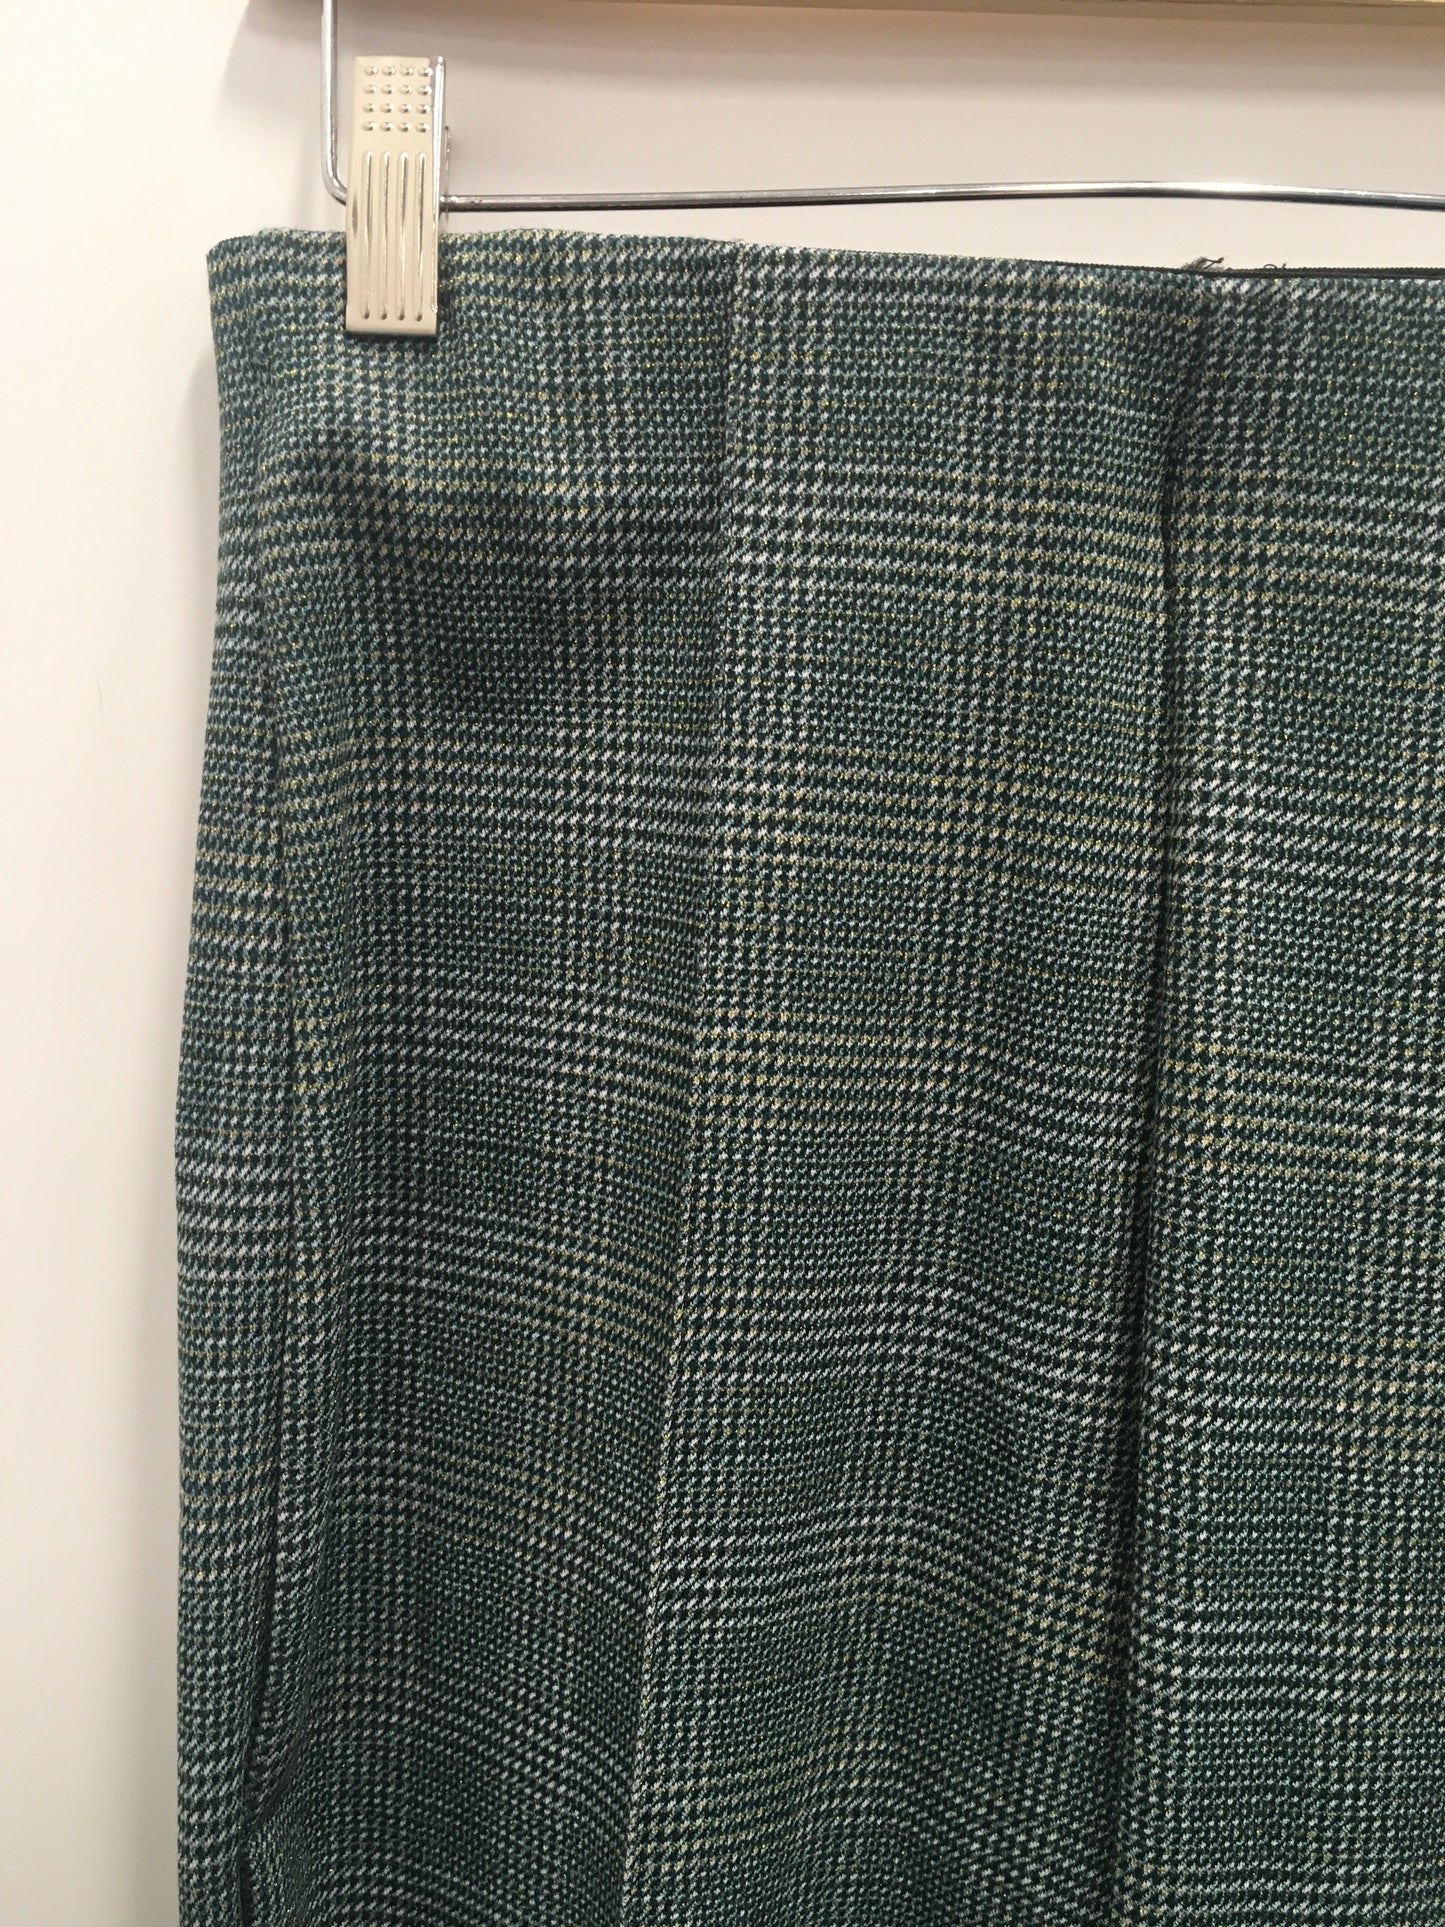 Pants Work/dress By Maze  Size: M